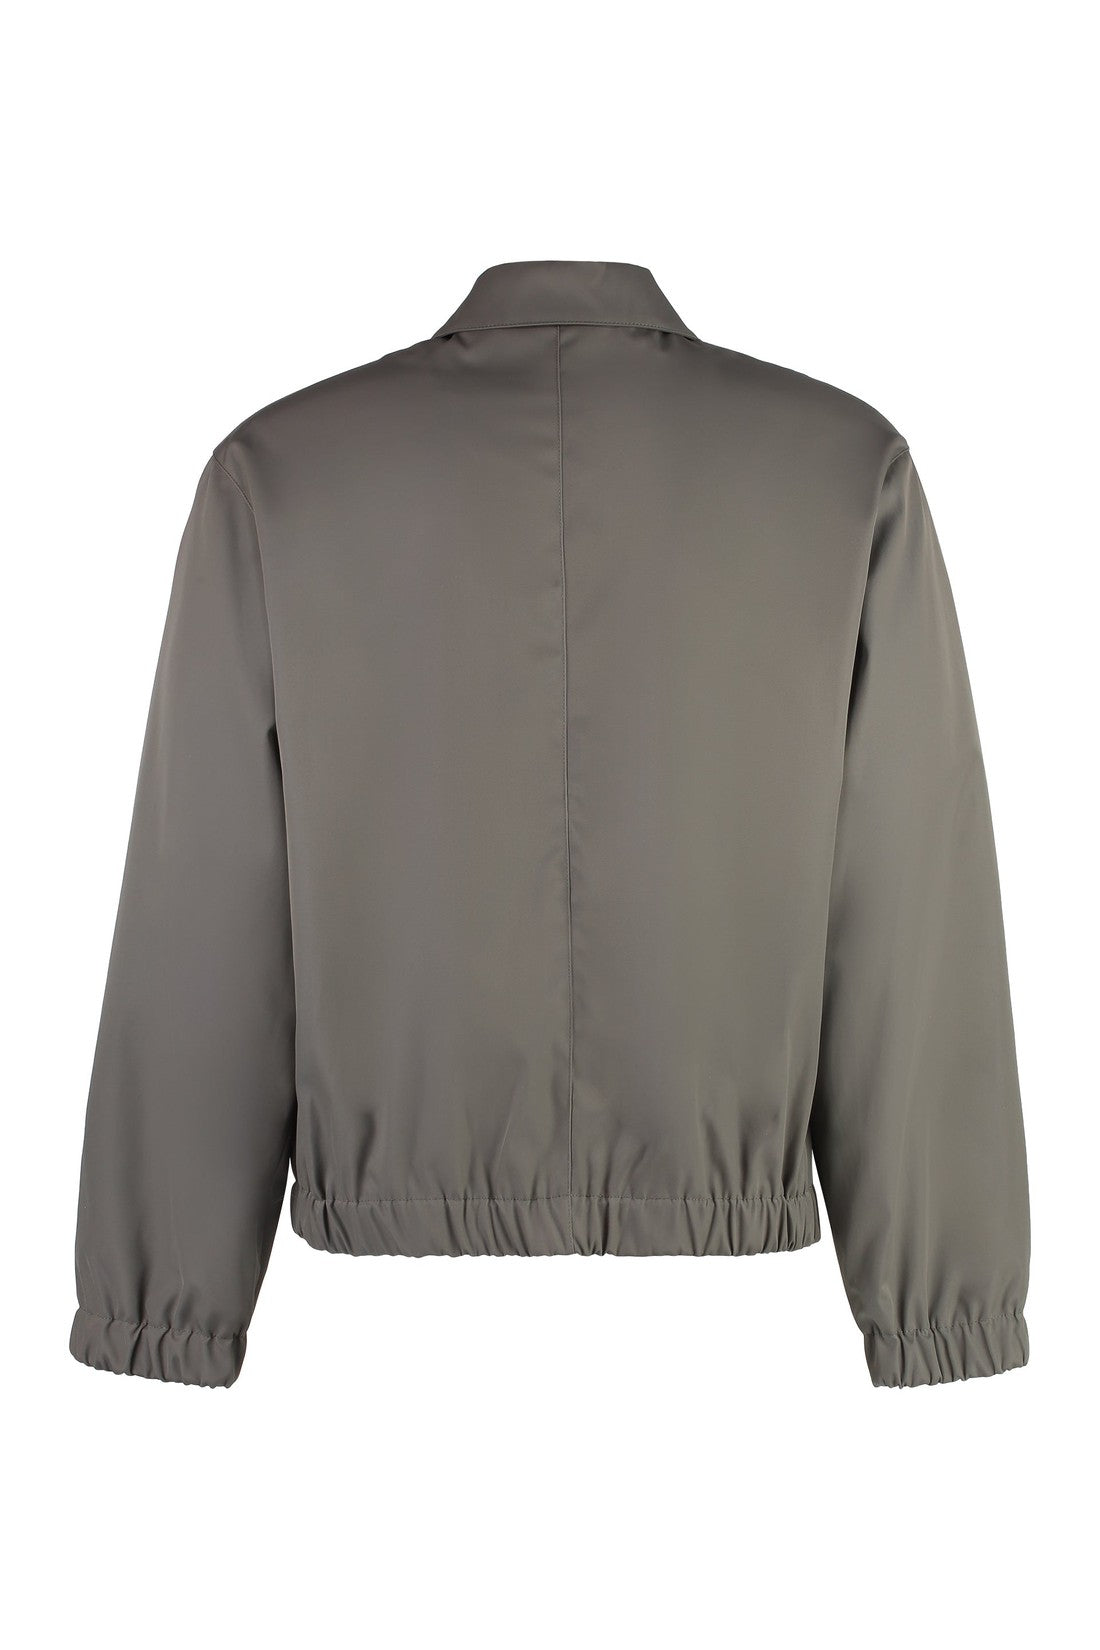 AMI PARIS-OUTLET-SALE-Techno fabric jacket-ARCHIVIST